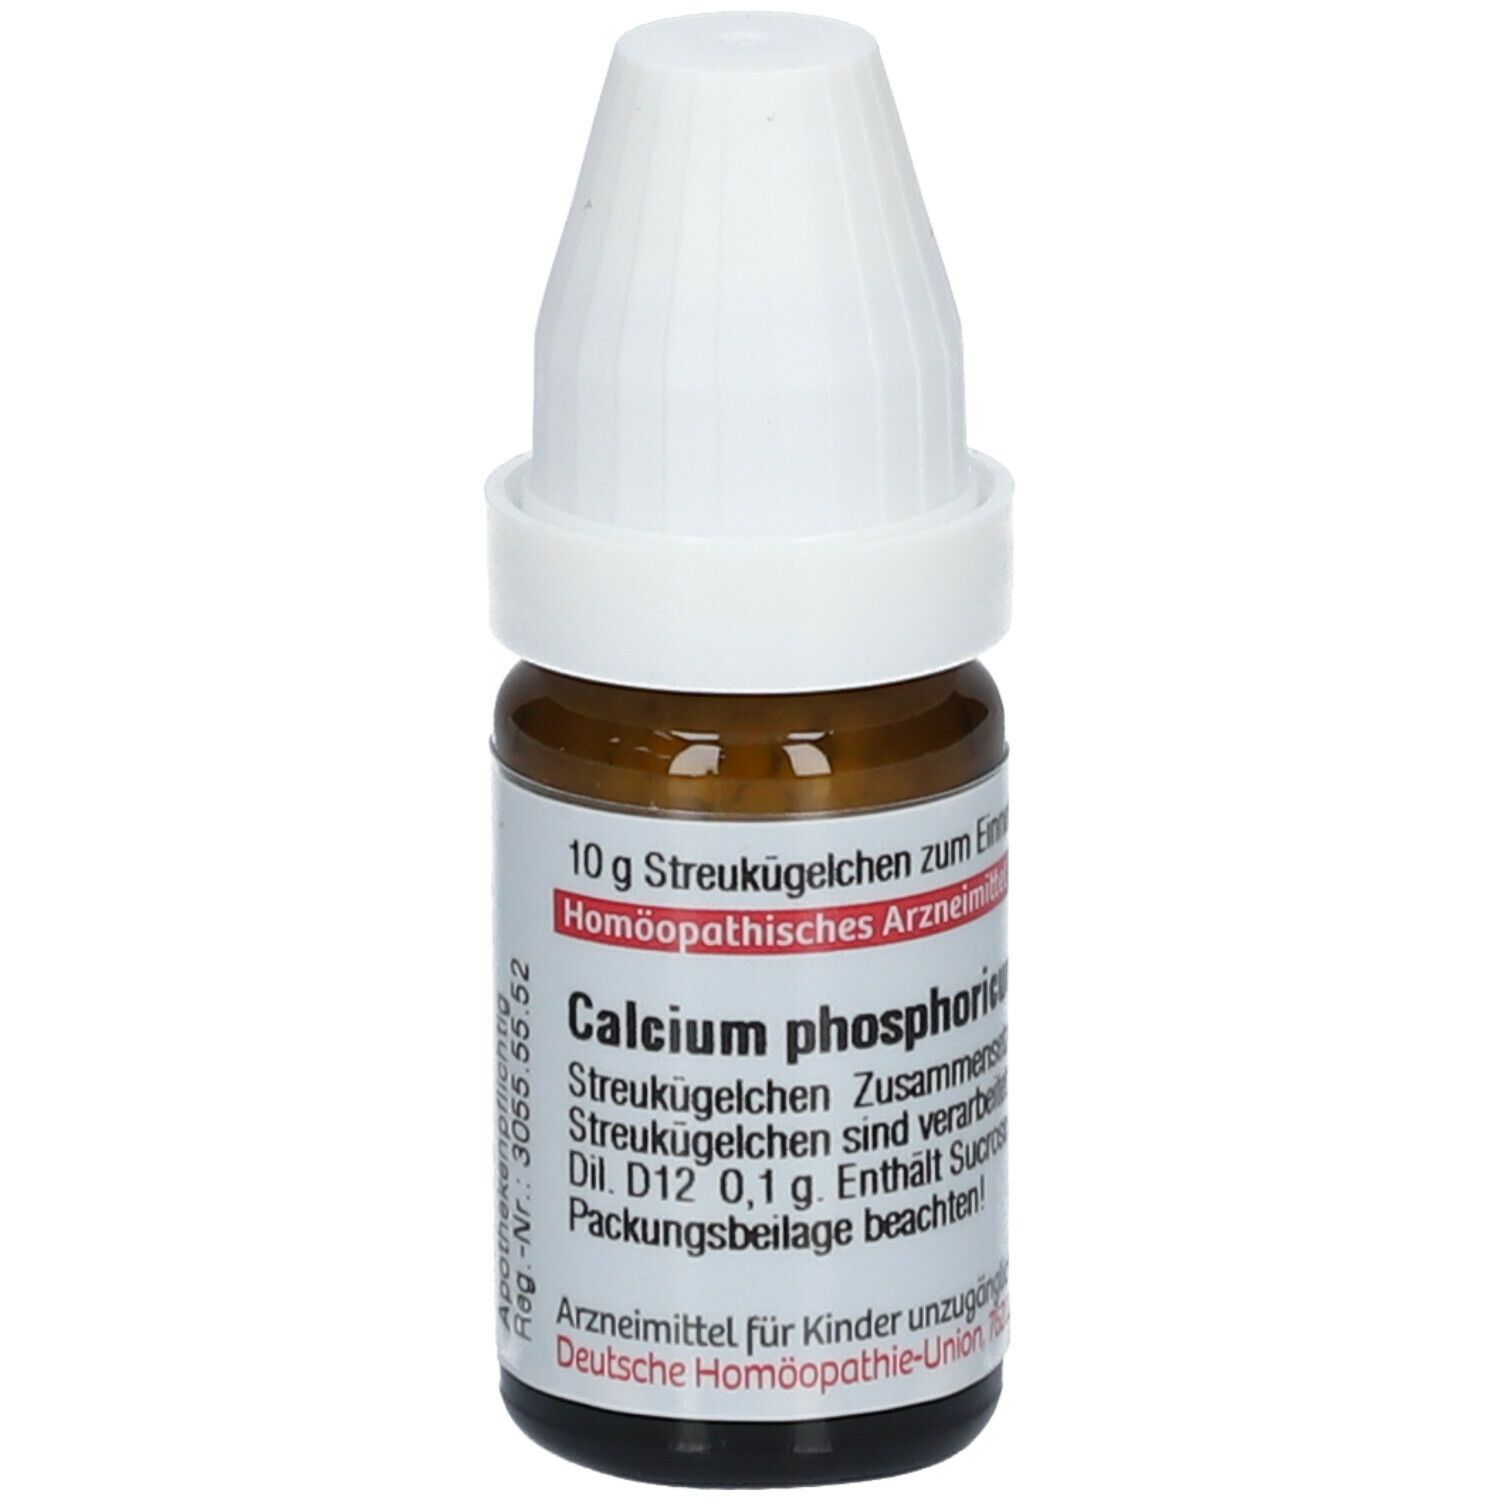 DHU Calcium Phosphoricum D12